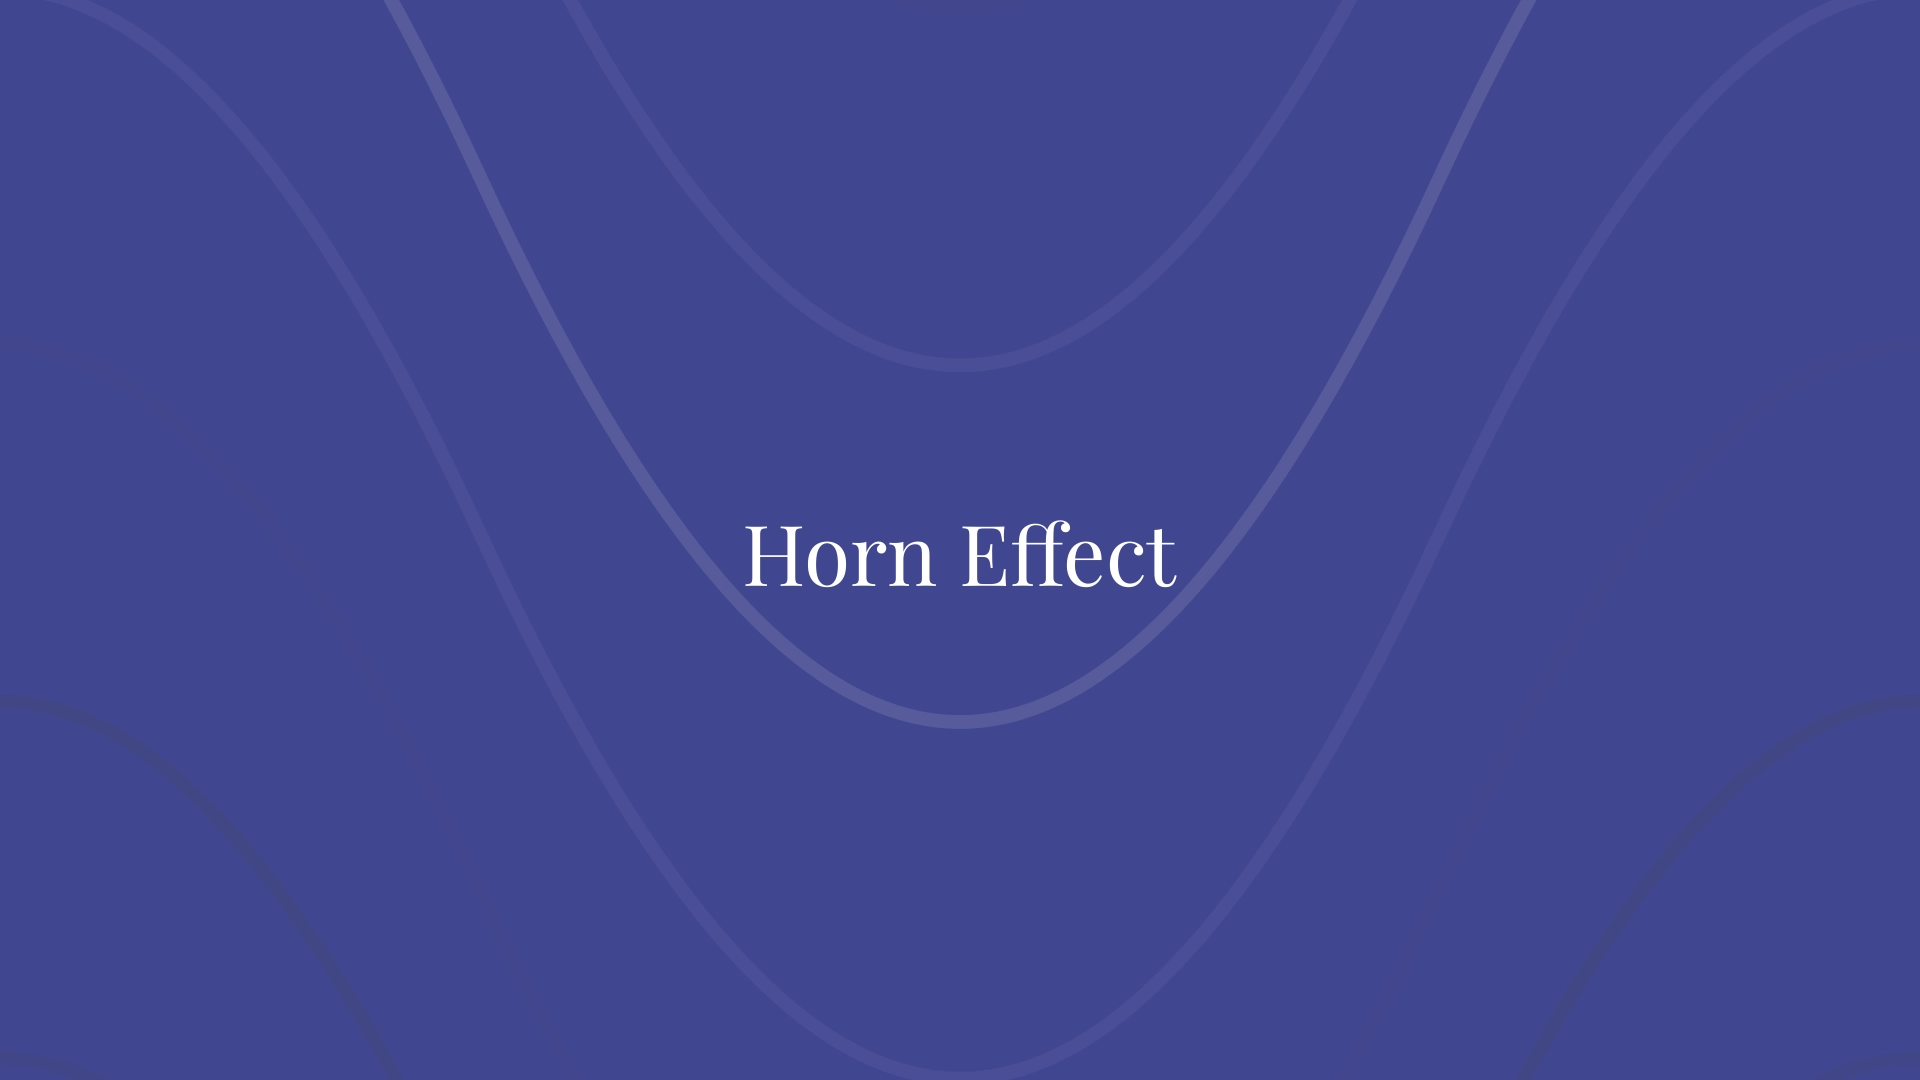 Horn Effect